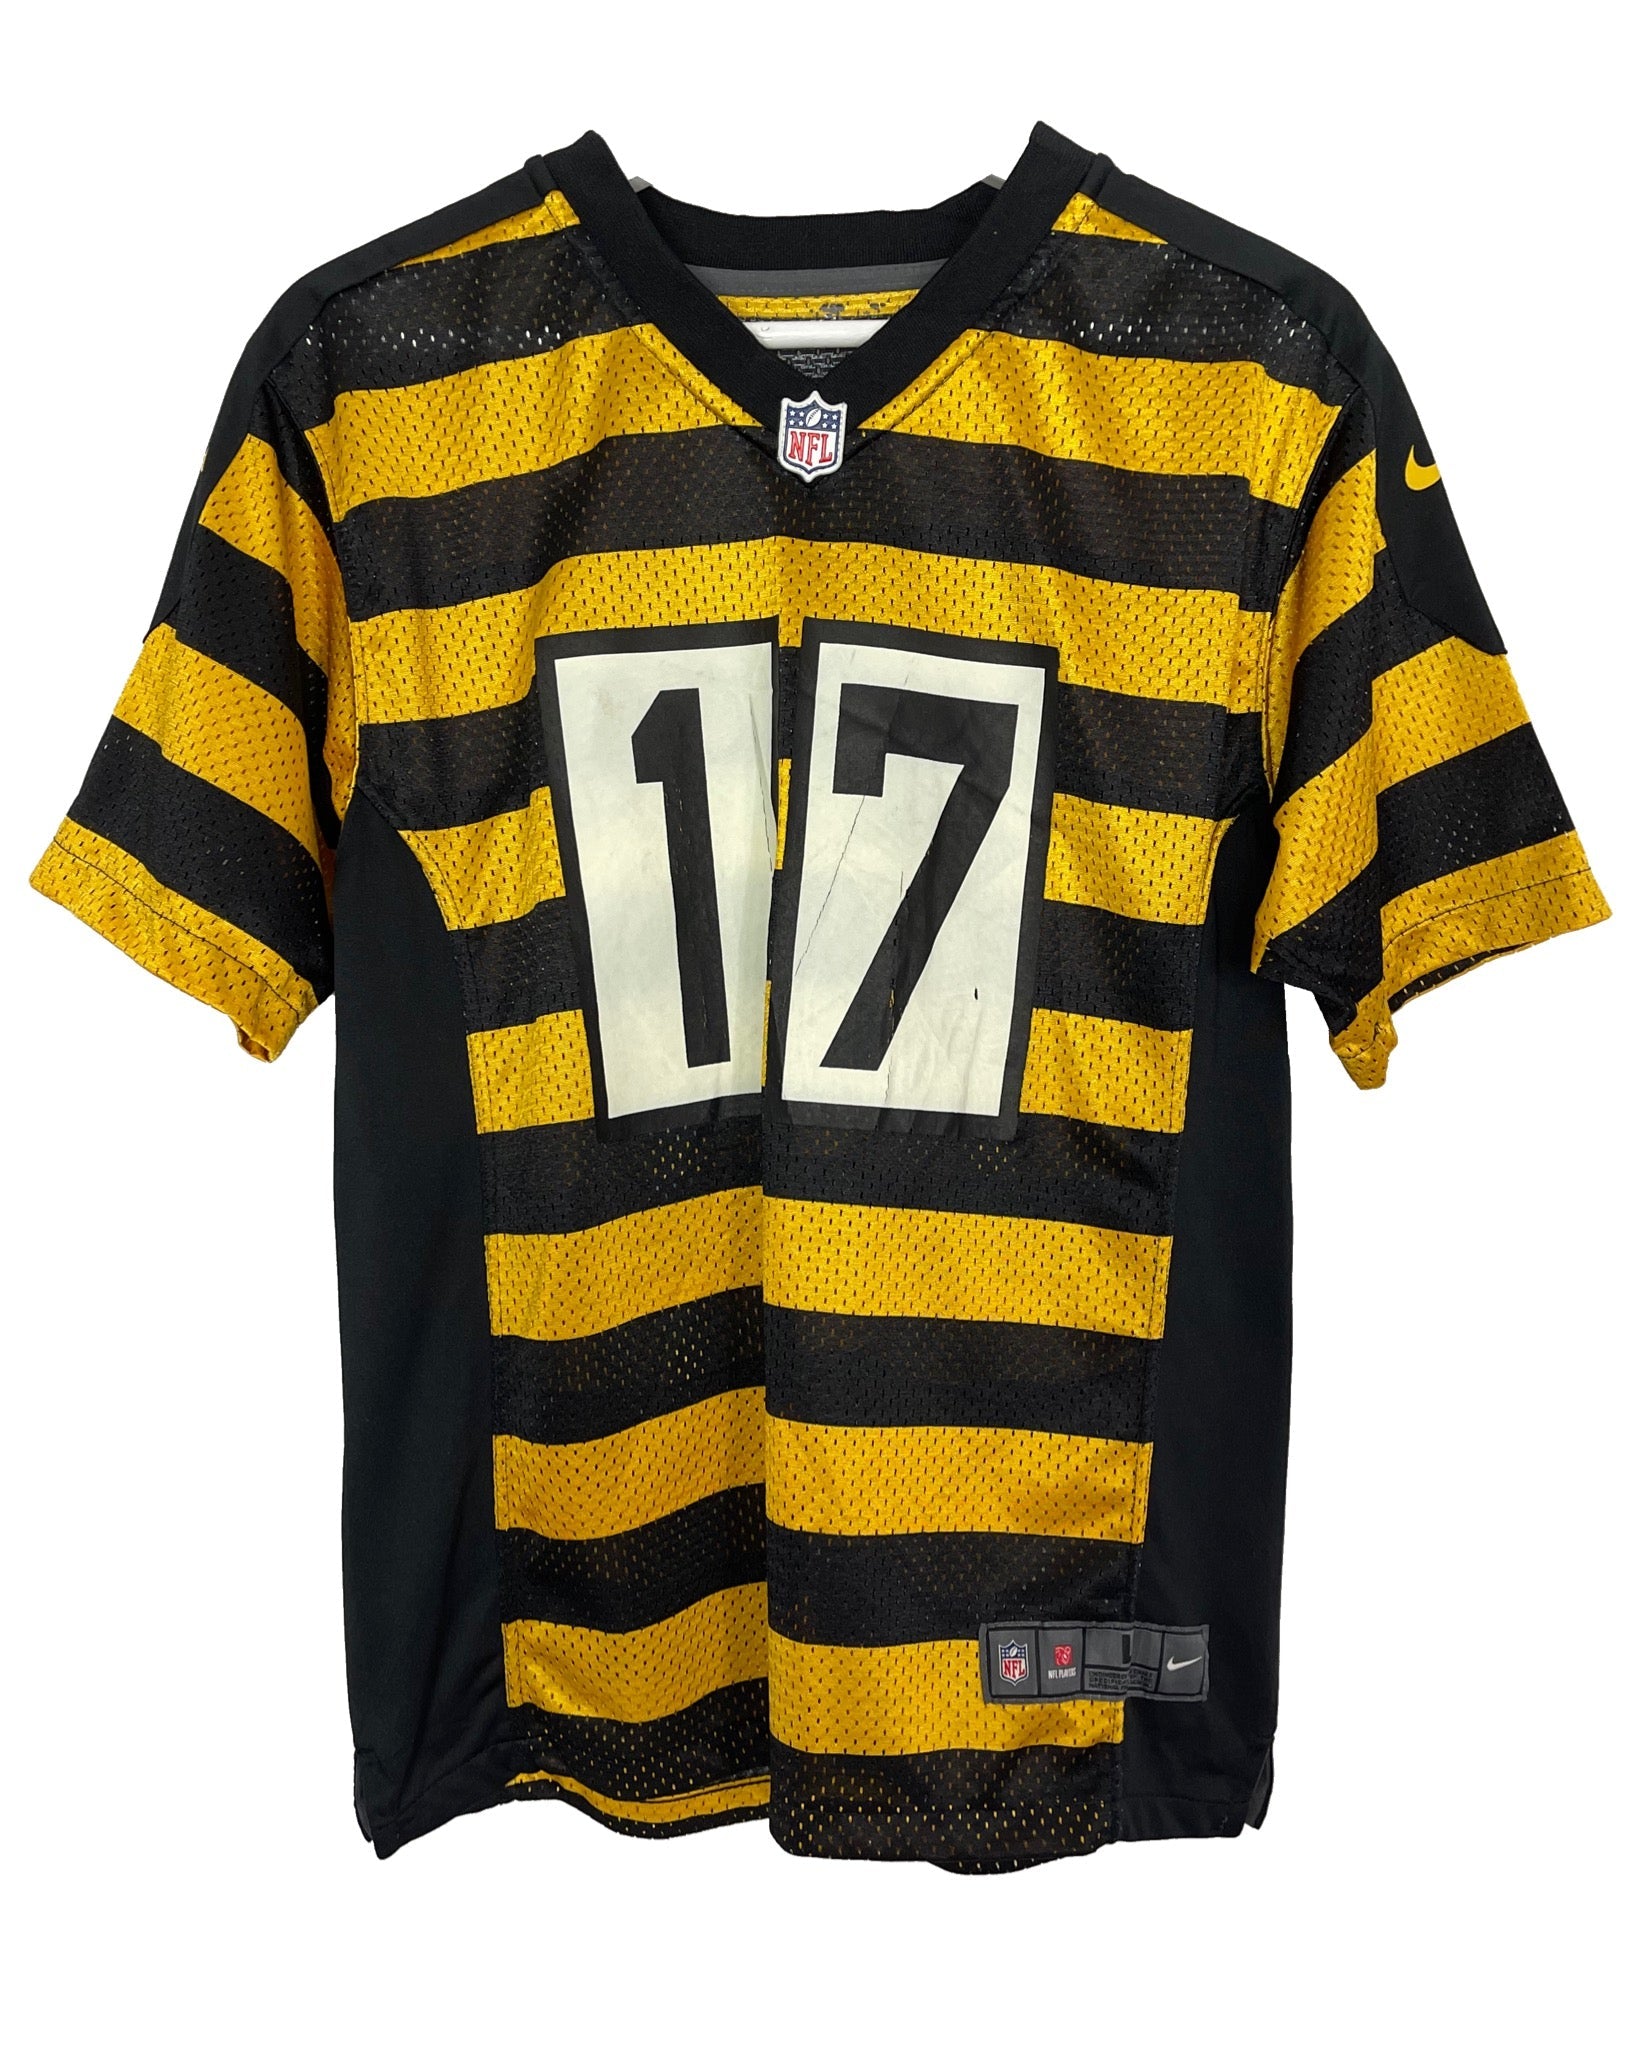   NFL Maillot de NFL - Pittsburgh Steelers - XS - PLOMOSTORE